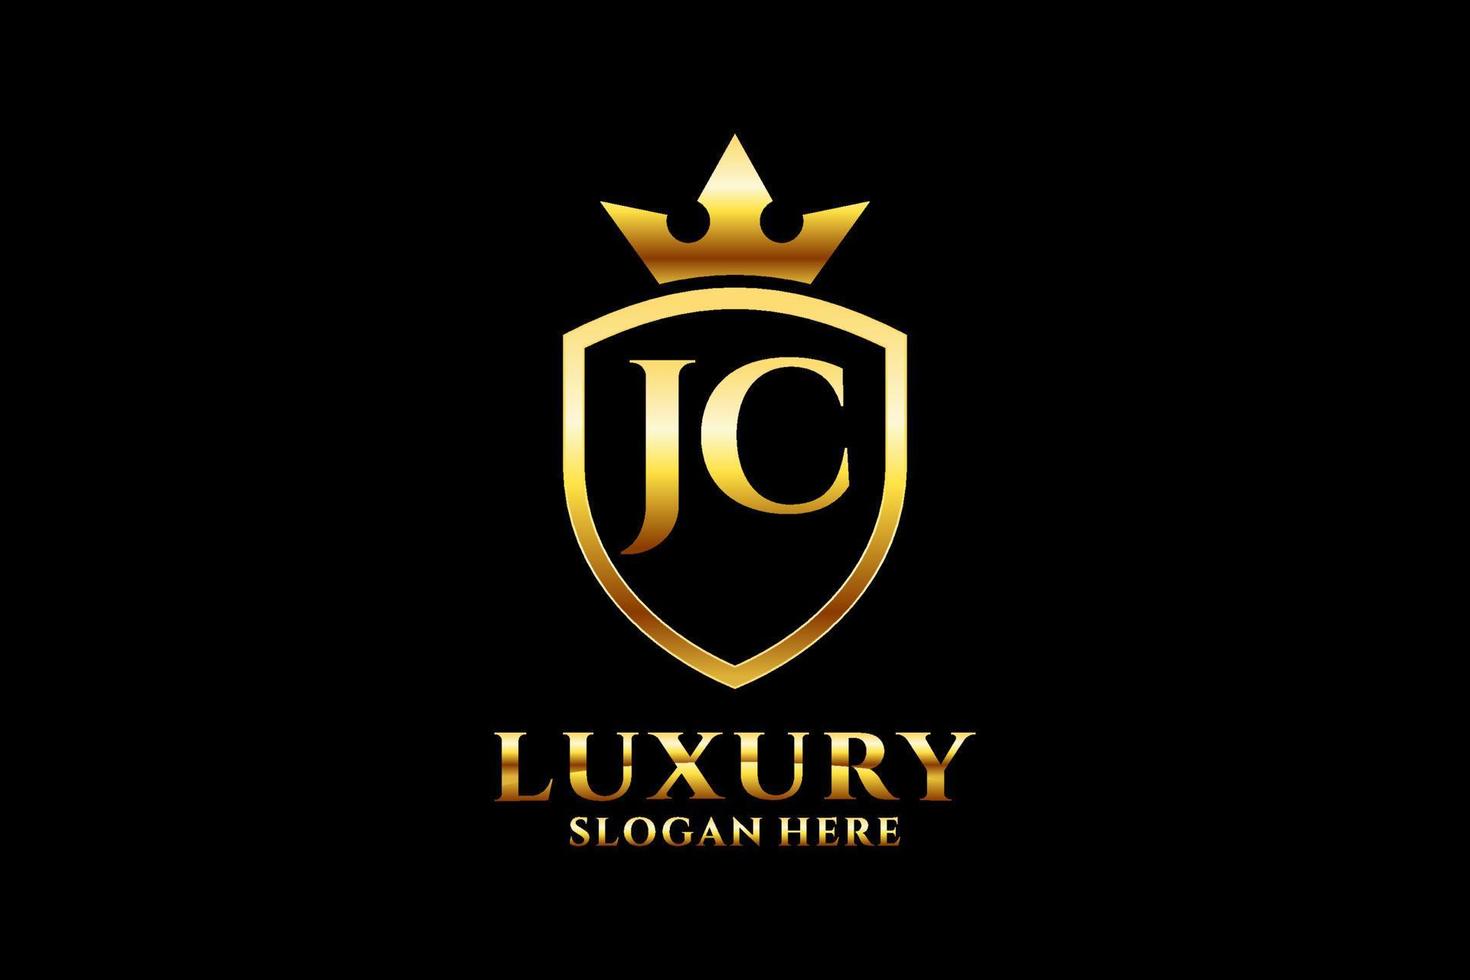 logo monogramme de luxe élégant initial jc ou modèle de badge avec volutes et couronne royale - parfait pour les projets de marque de luxe vecteur